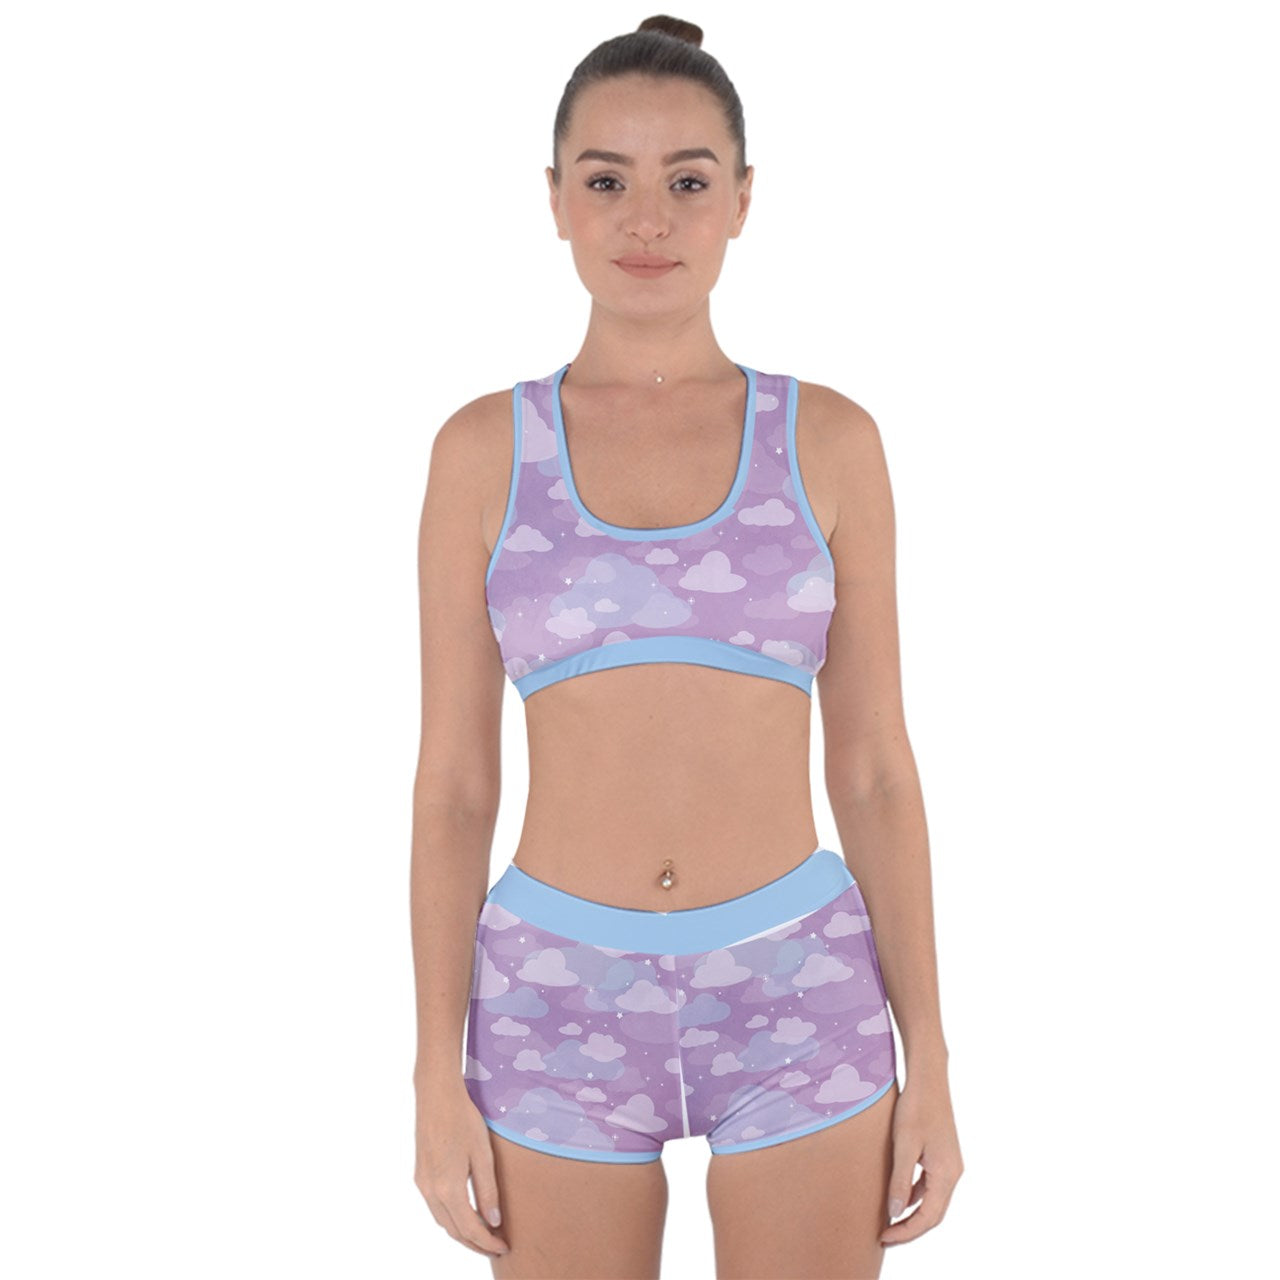 Starcrossed Skies Purple Racerback Bikini Swimsuit